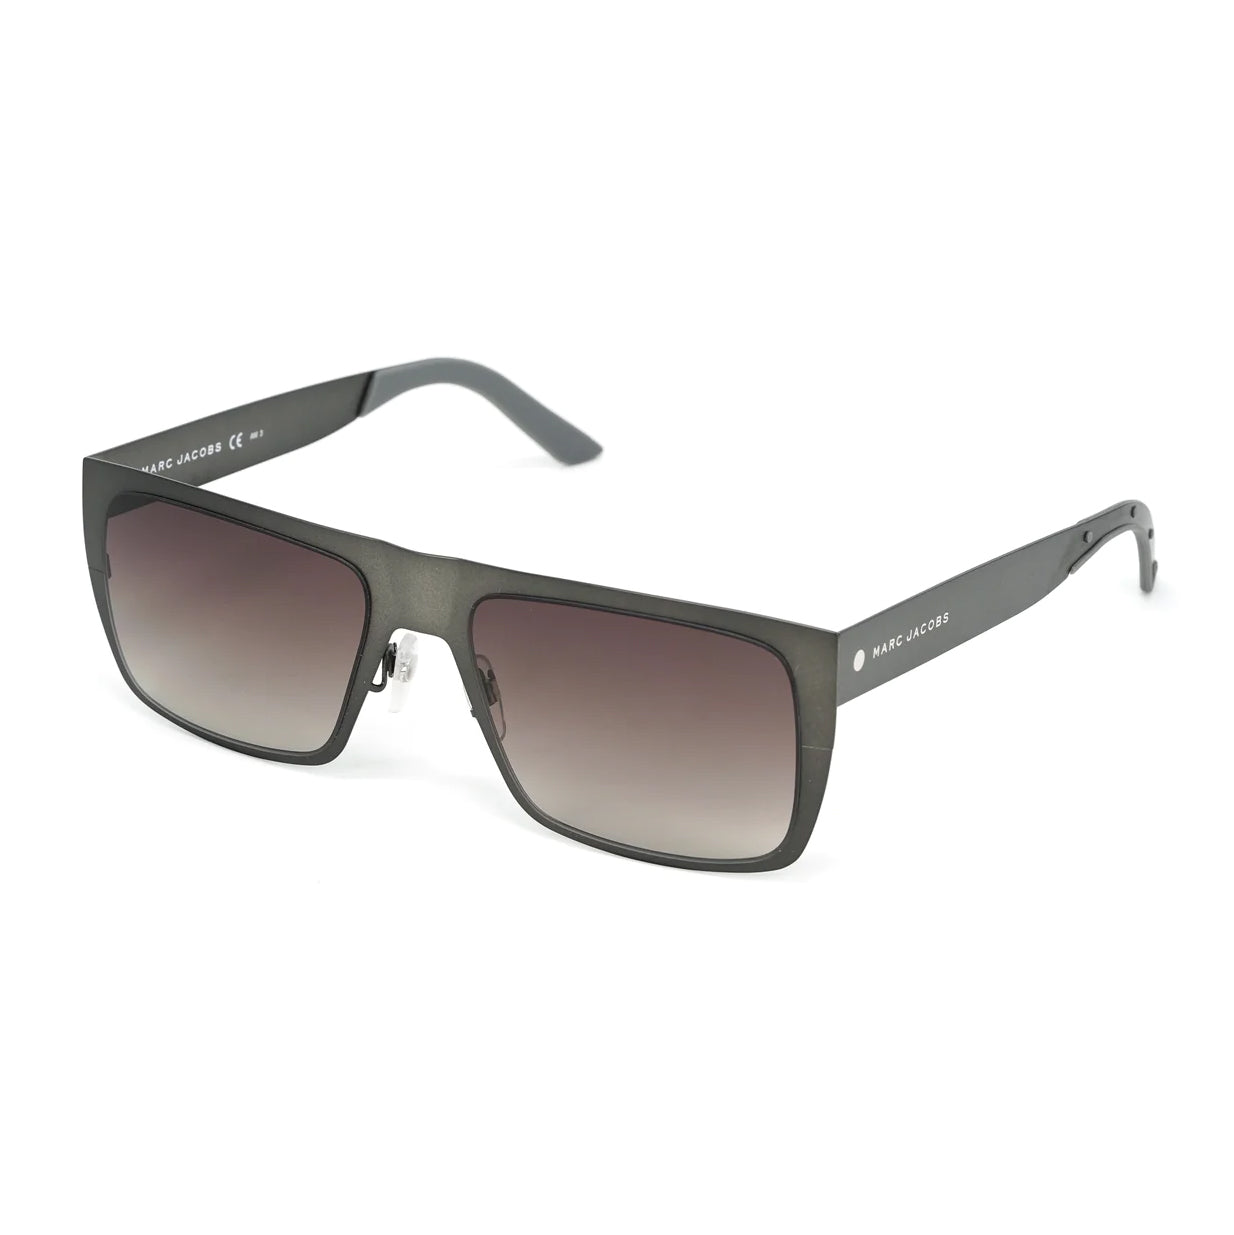 Marc Jacobs Men's Rectangular Sunglasses Flat Top Grey MARC 55/S R80/HA